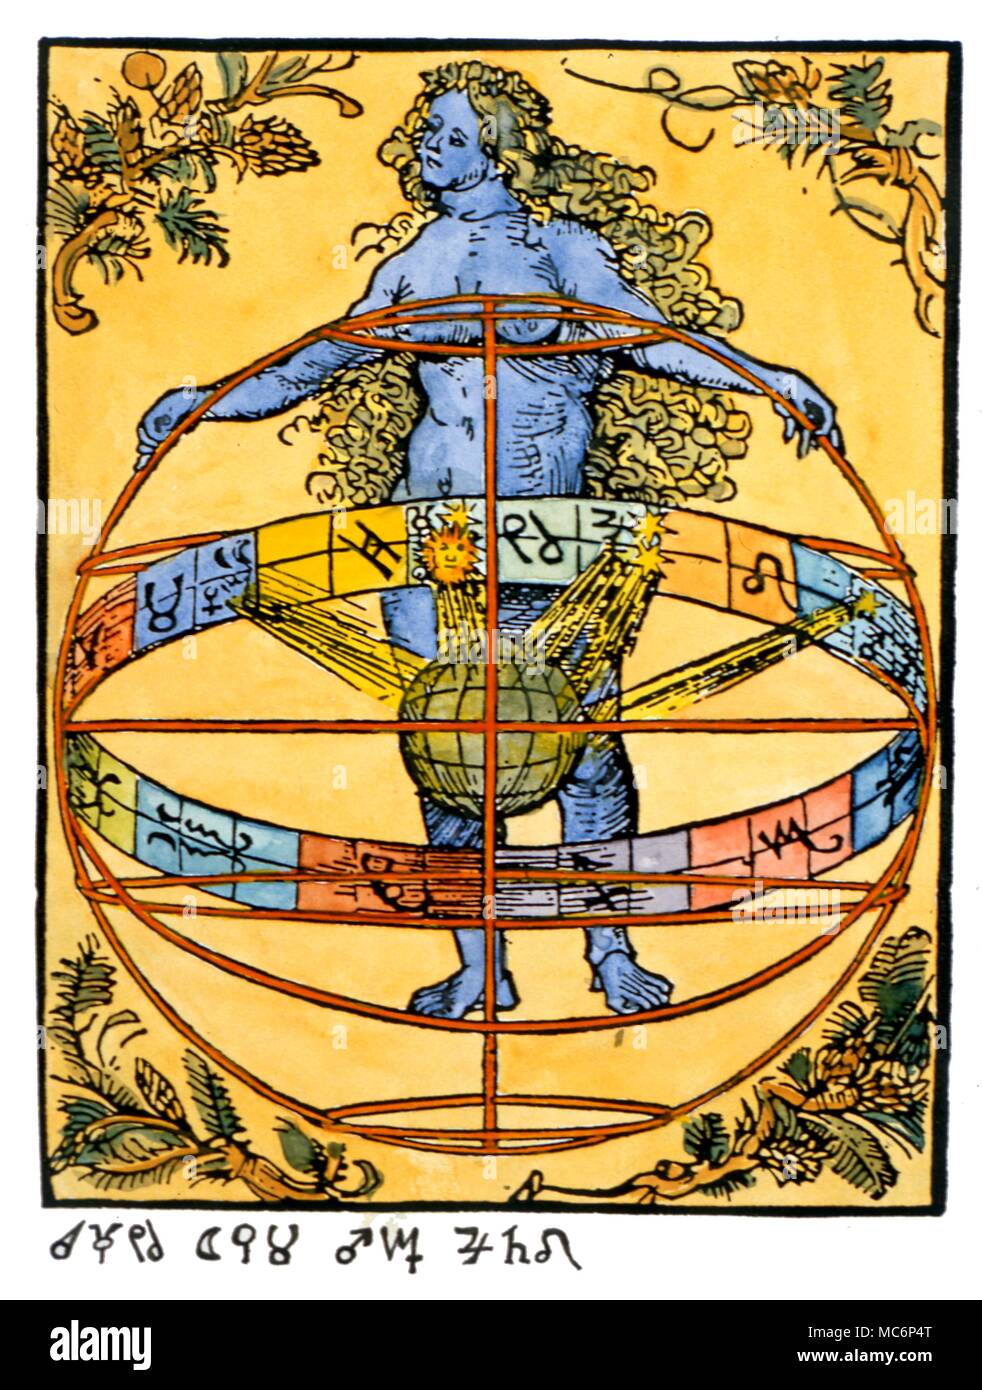 Lo zodiaco, con le dodici immagini nelle mani di una personificazione dell'Astrologia. I pianeti nello zodiaco, confluencing sulla terra, rivelano che si tratta di un oroscopo- probabilmente una thema mundi. Silografia di Albrecht Dürer. Charles Walker / Foto Stock